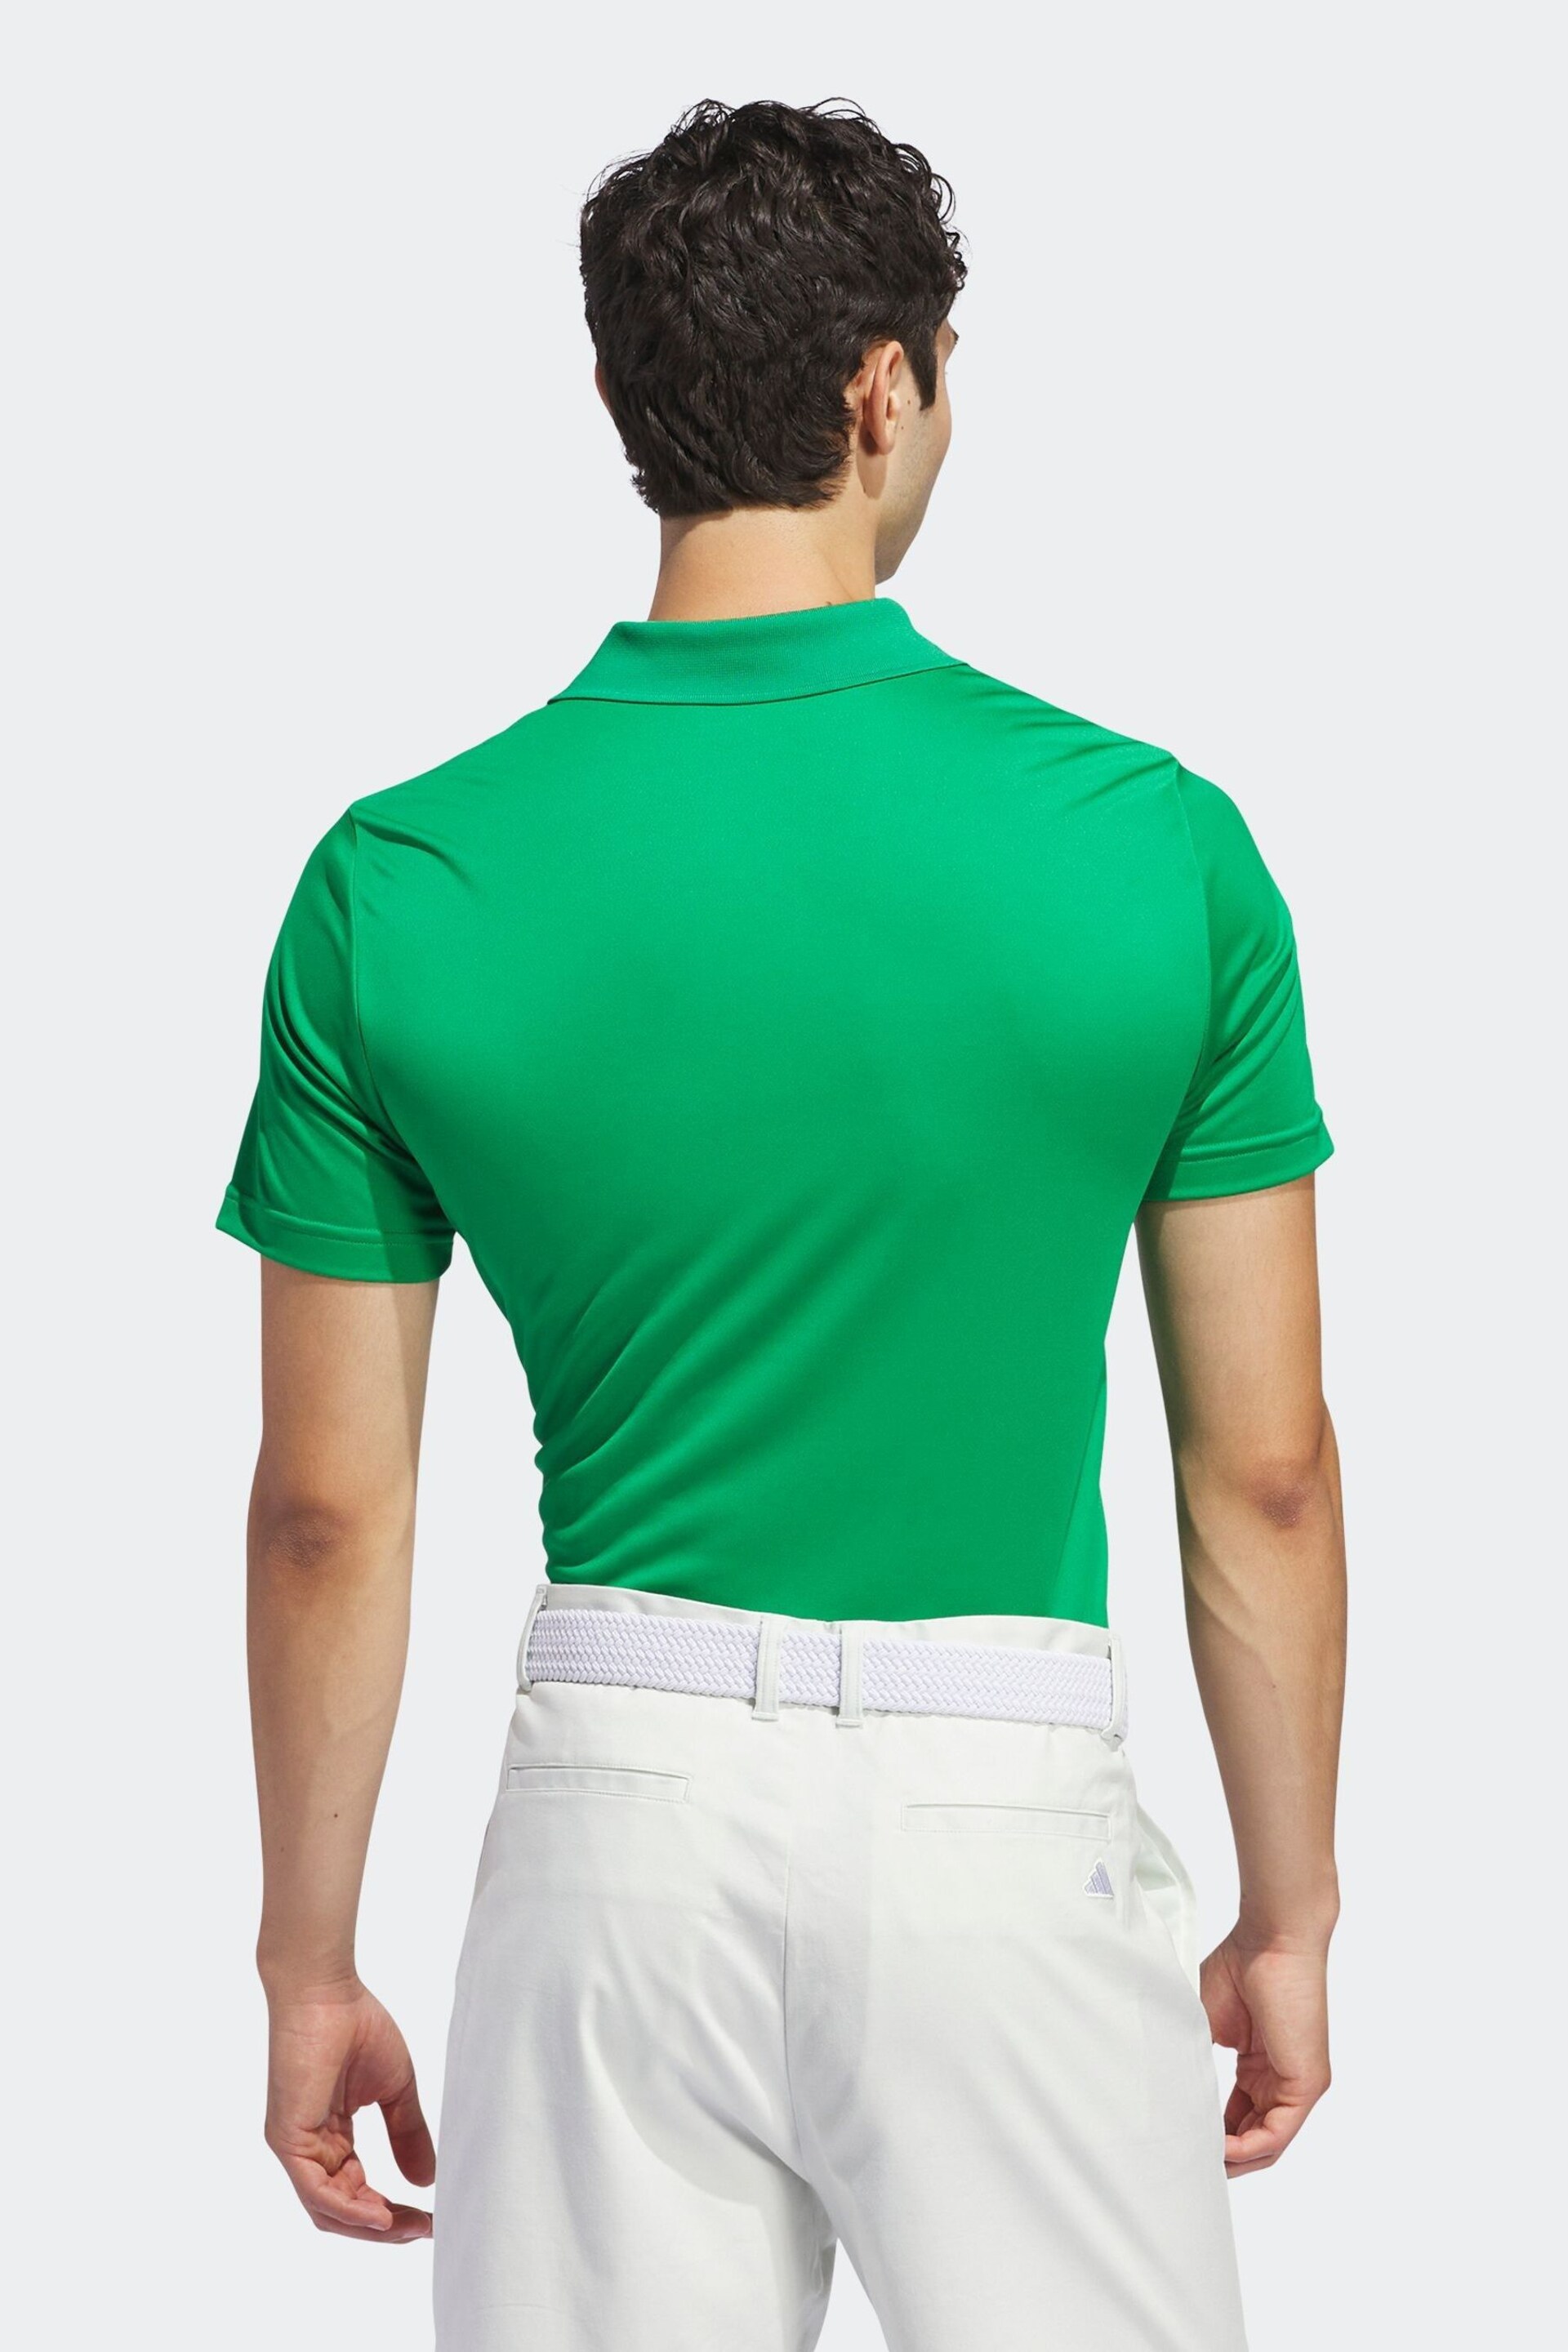 adidas Golf Polo Shirt - Image 3 of 7